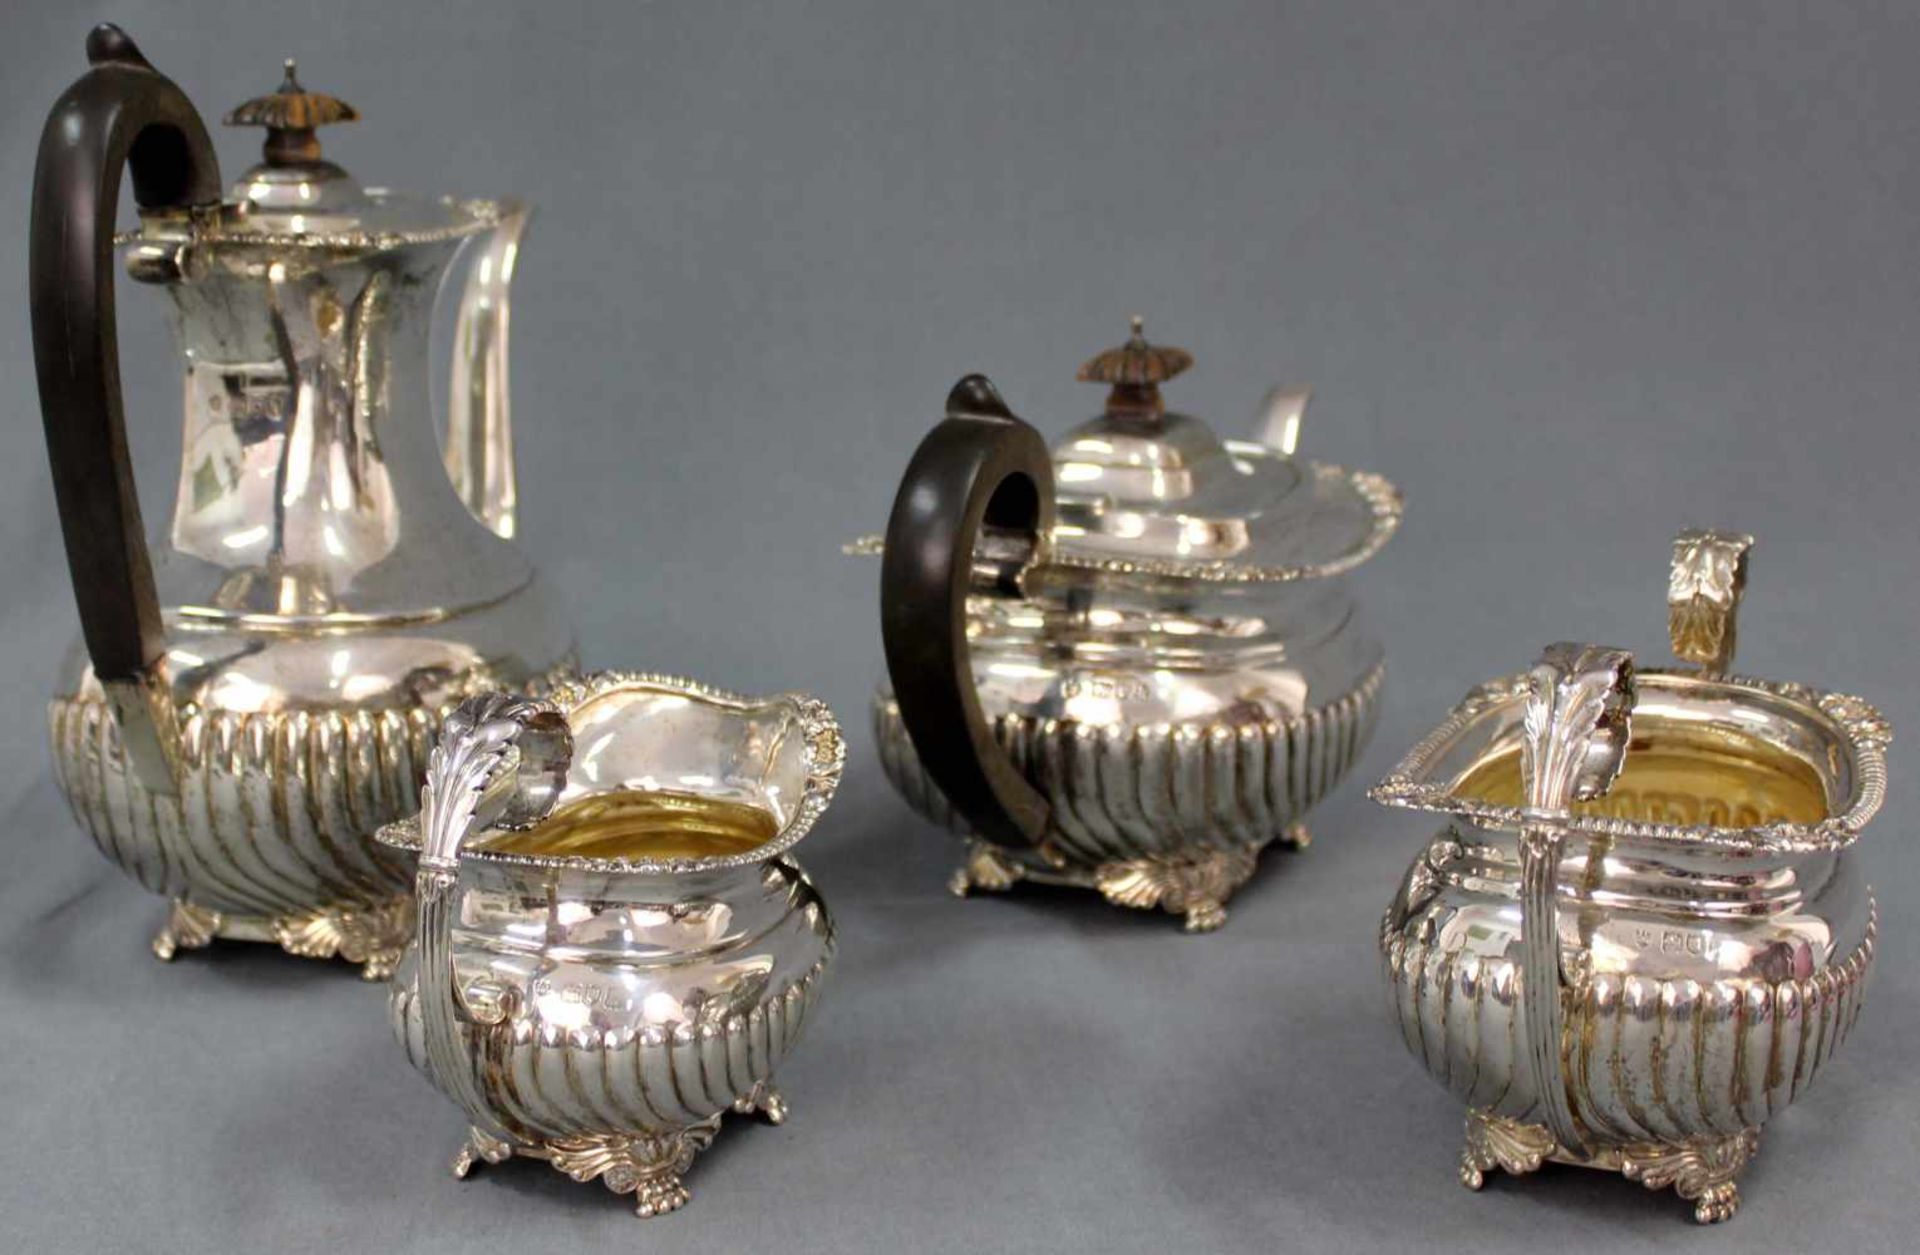 Englisches Tee- und Kaffeeservice, Silber 925. London, um 1905.1865 Gramm Gesamtgewicht. Bis 24 cm - Image 7 of 12